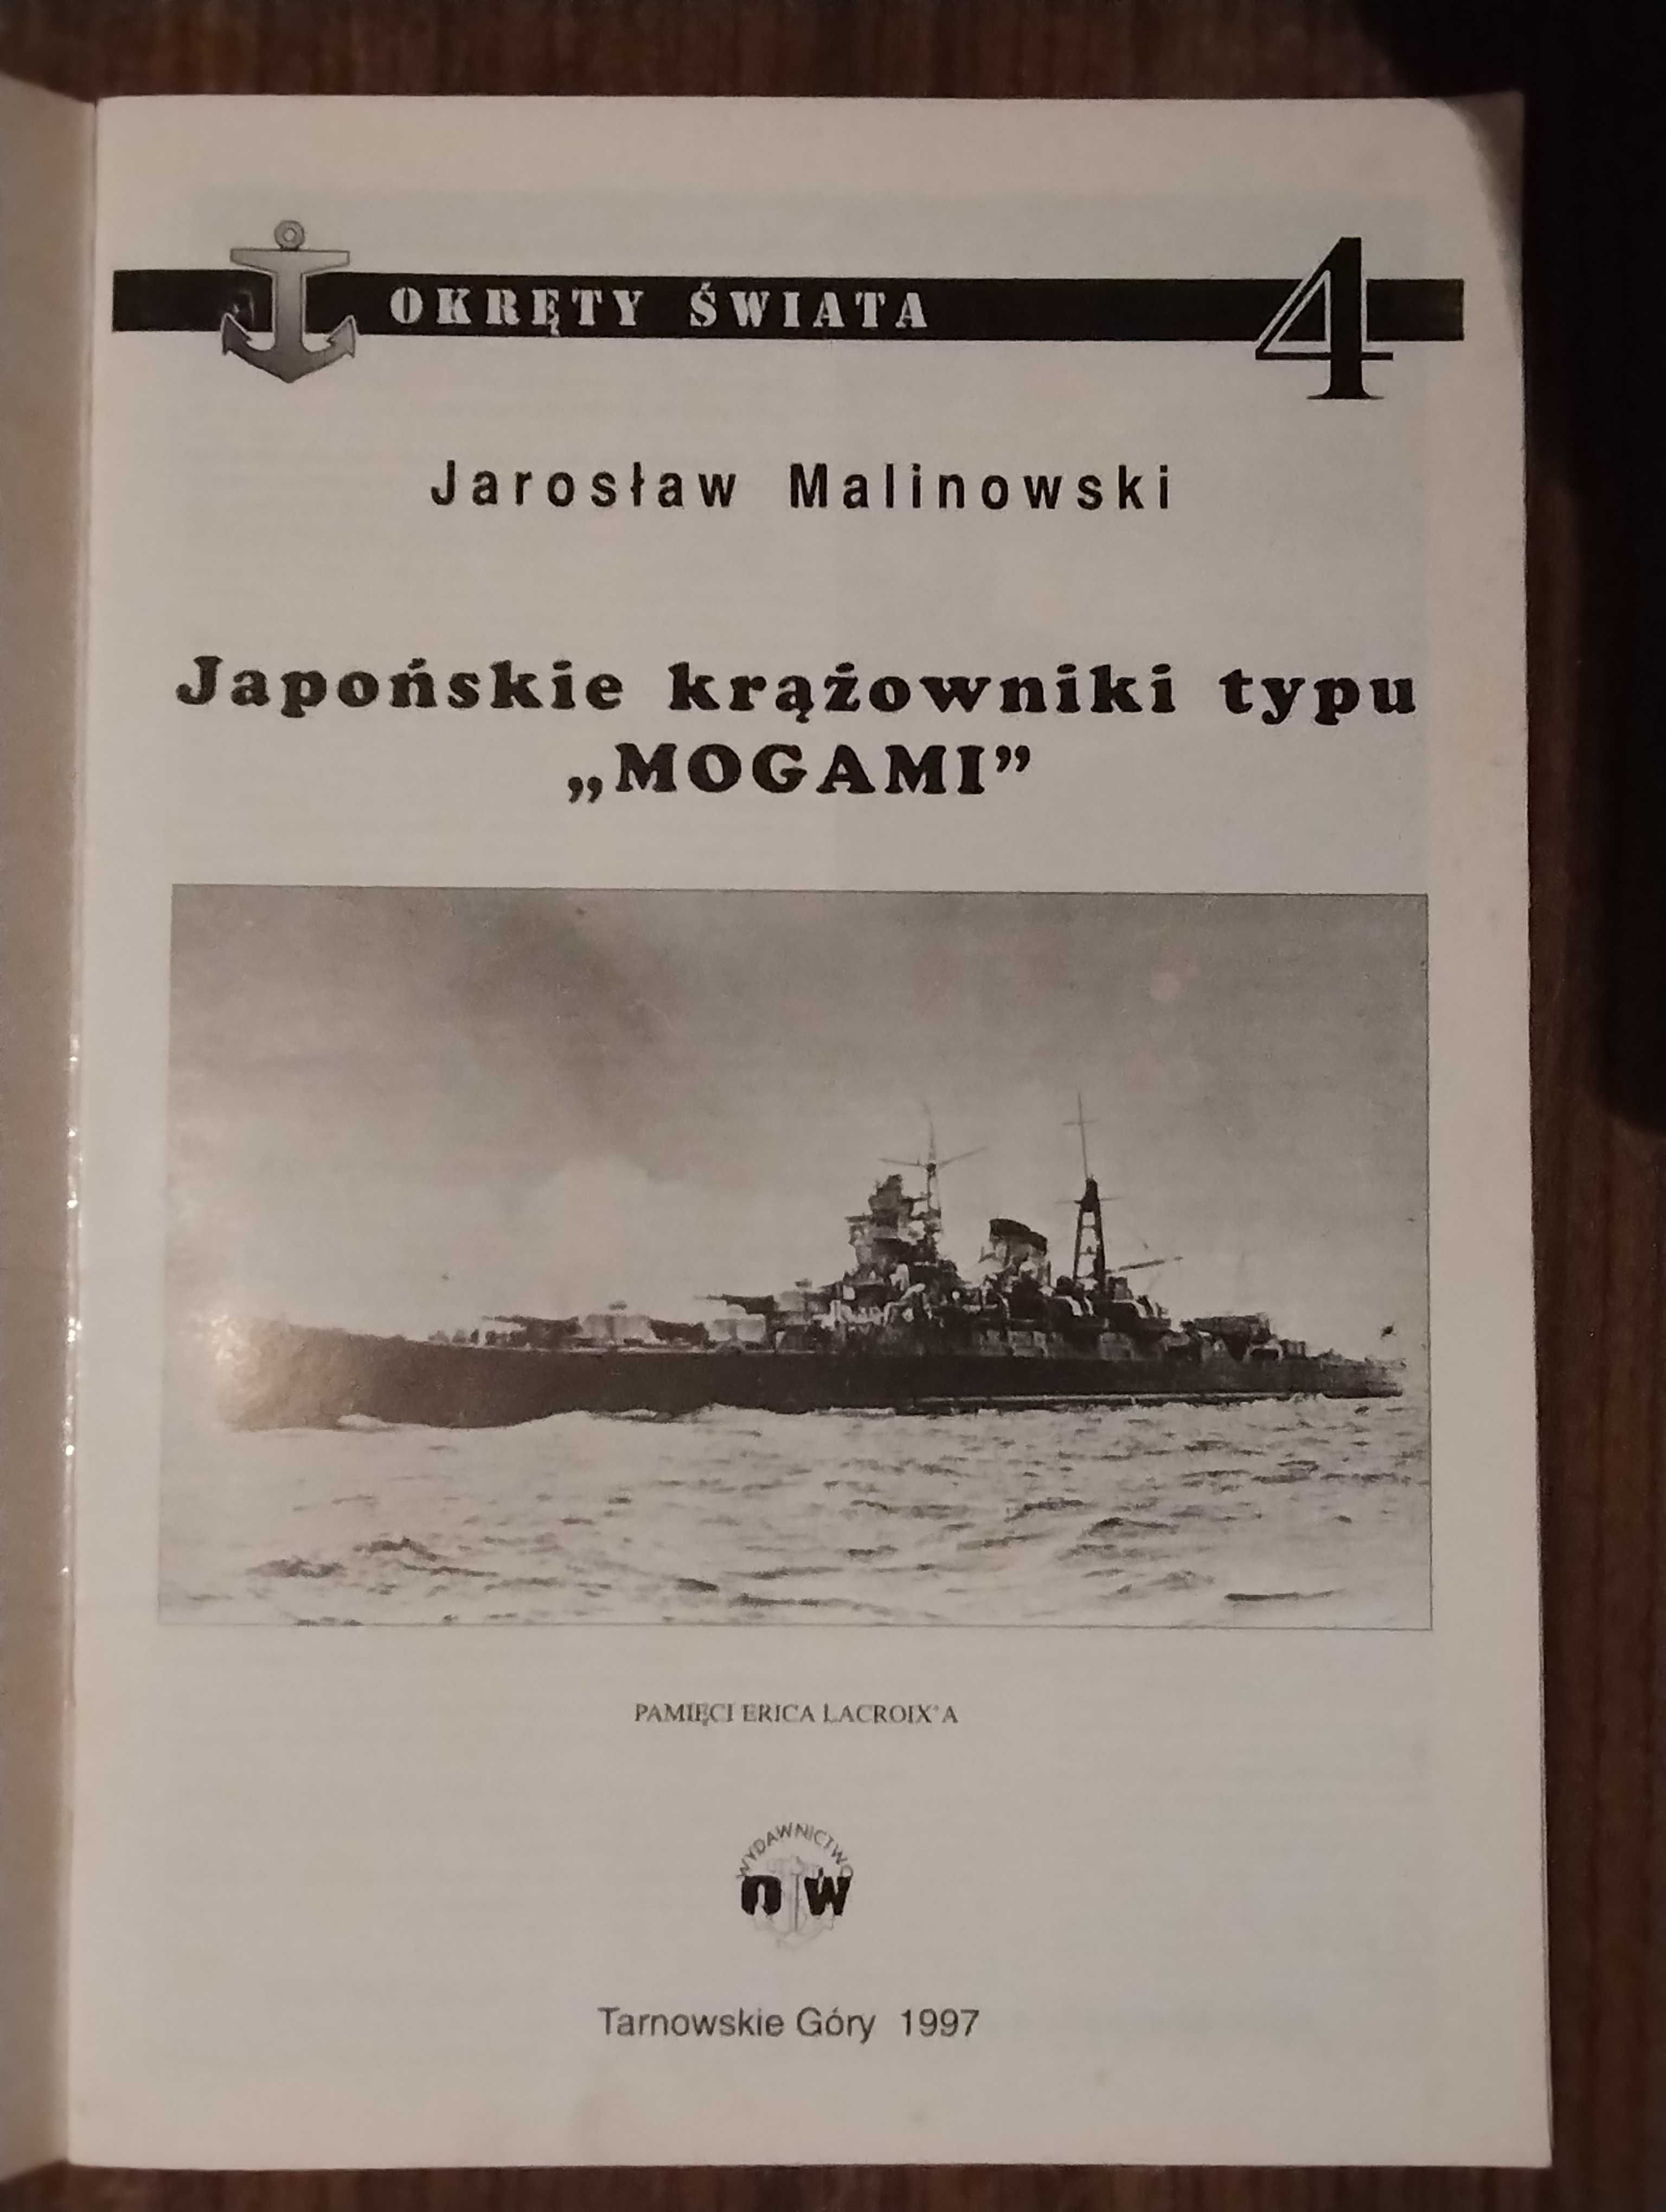 Okręty świata - J. Malinowski - Japońskie krążowniki typu "Mogami"